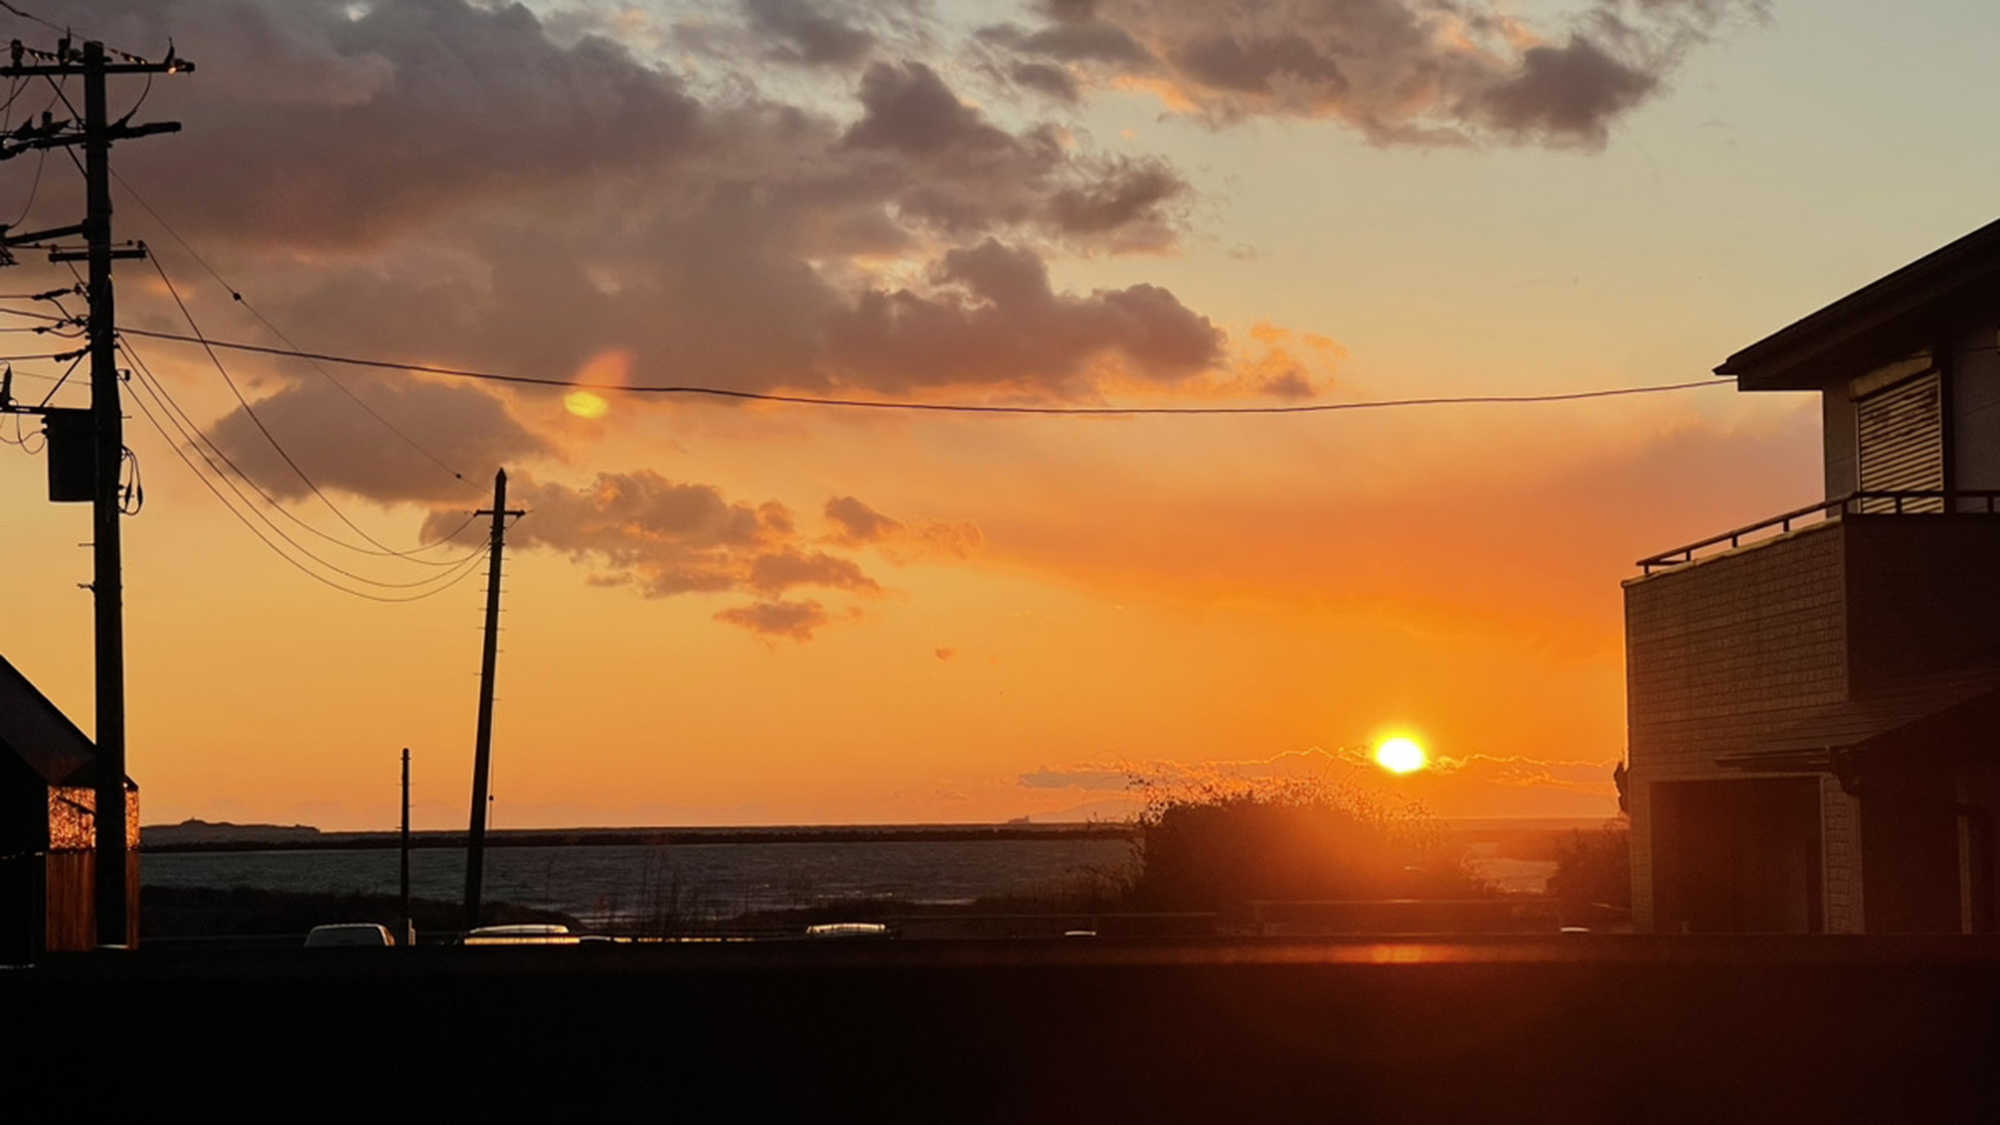 ・【夕陽】日本夕陽百選にも認定される館山湾の夕陽、天気がよければテラスから眺められるかも